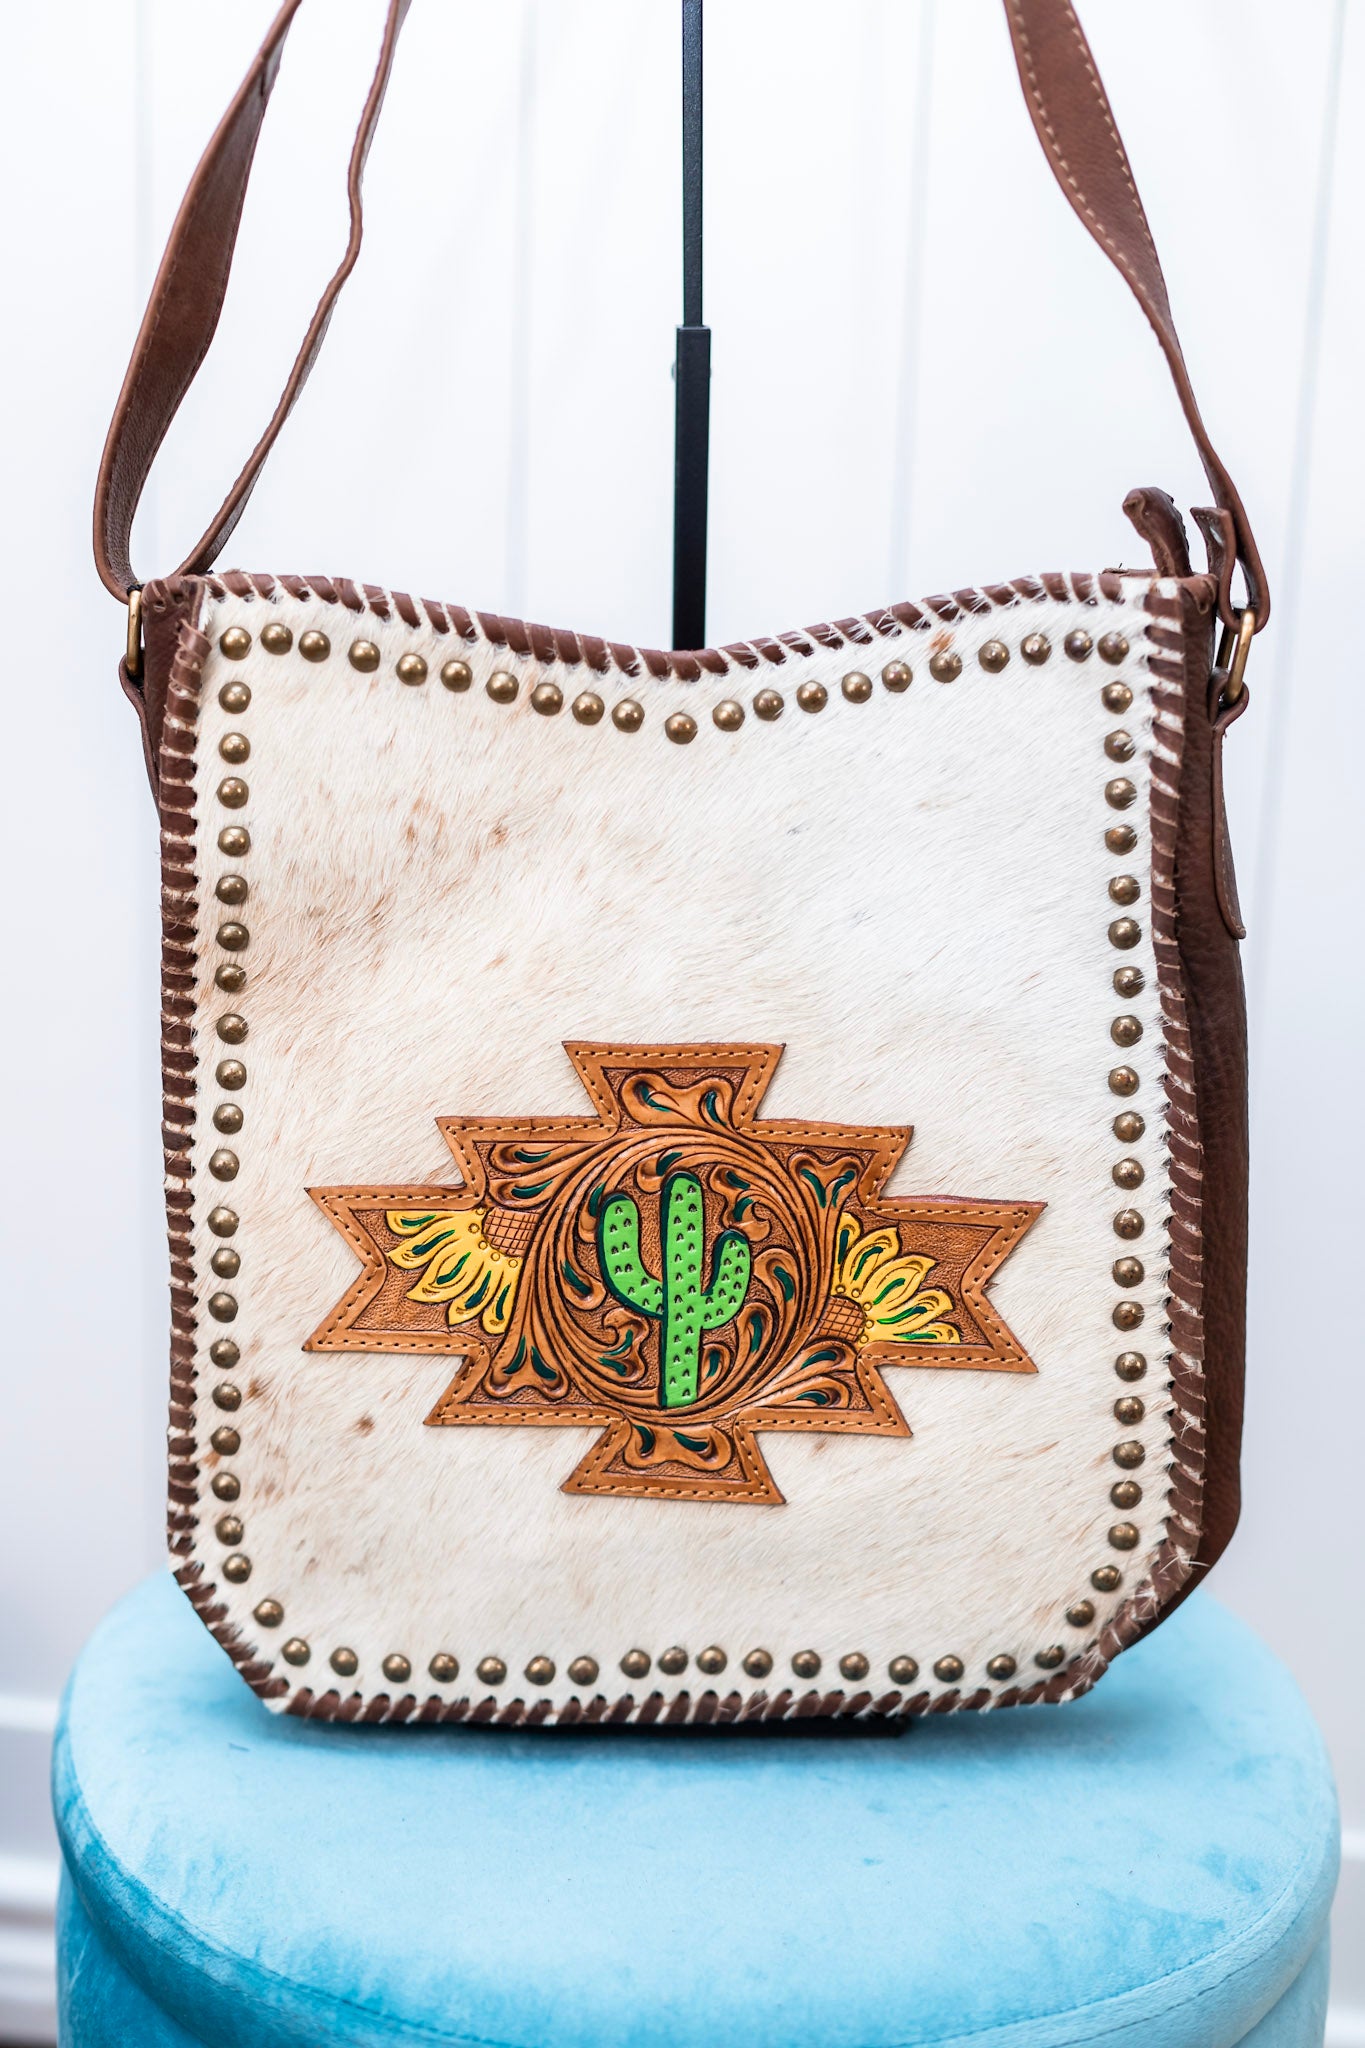 The Saguaro Bag